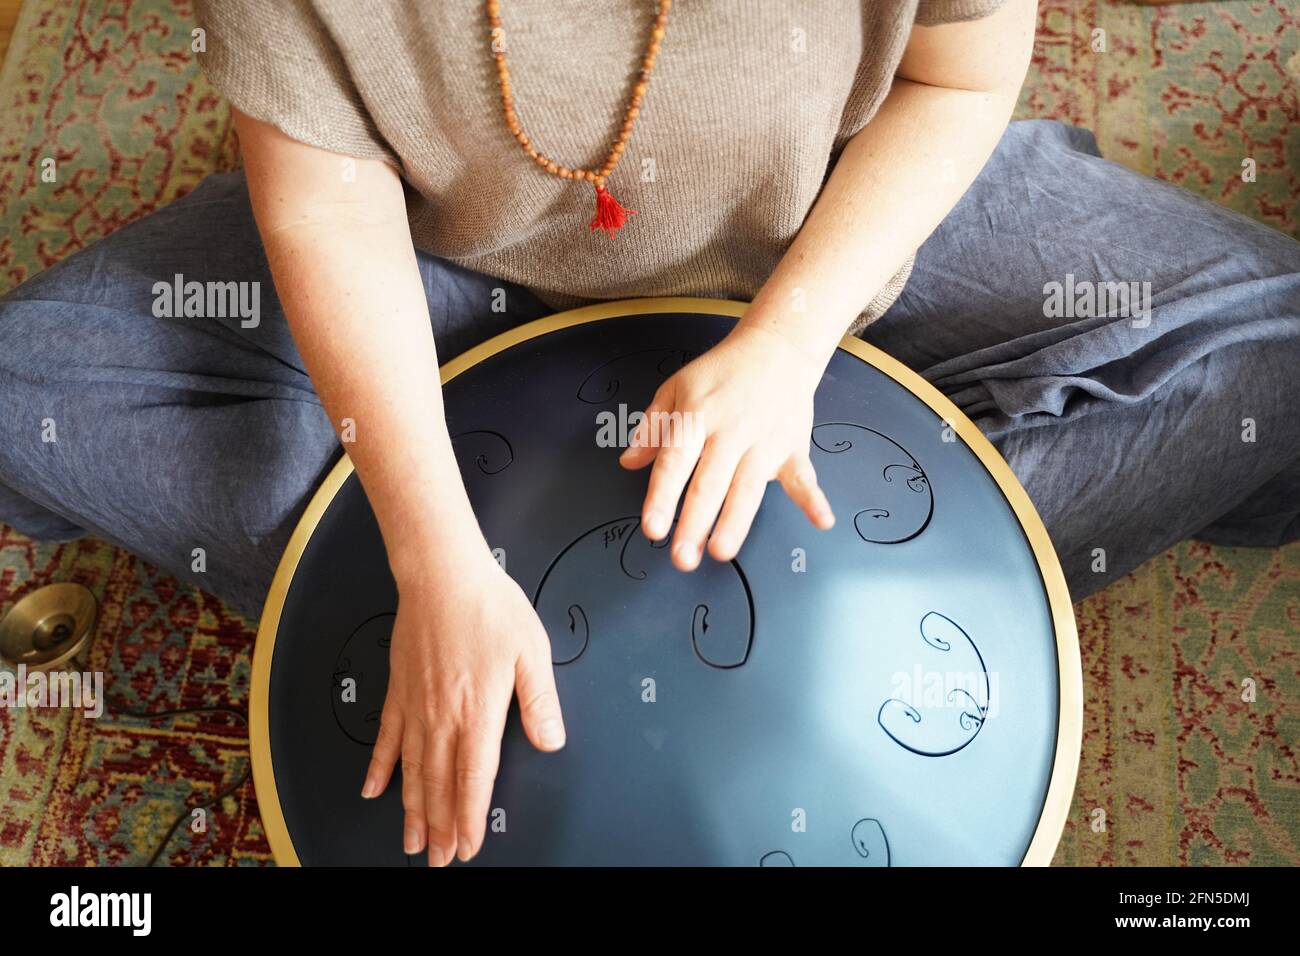 Femme avec joue un tambour RAV, gros plan des mains de womans jouant le tambour Hang, instrument de musique pour la guérison du son.Woman joue un tambour RAV Banque D'Images